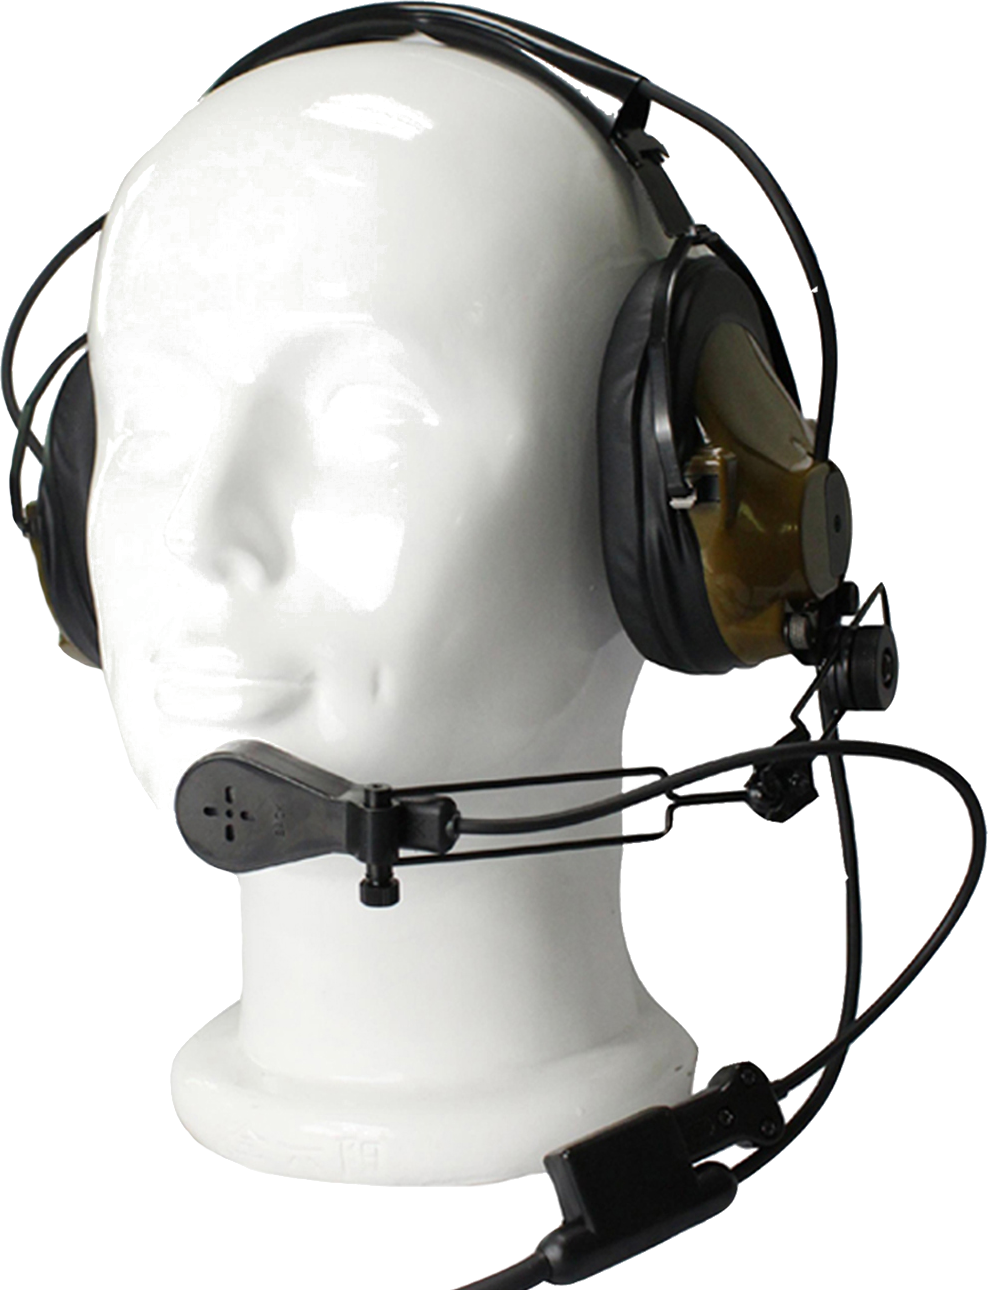 Agent-787 Professional Tactical Headband